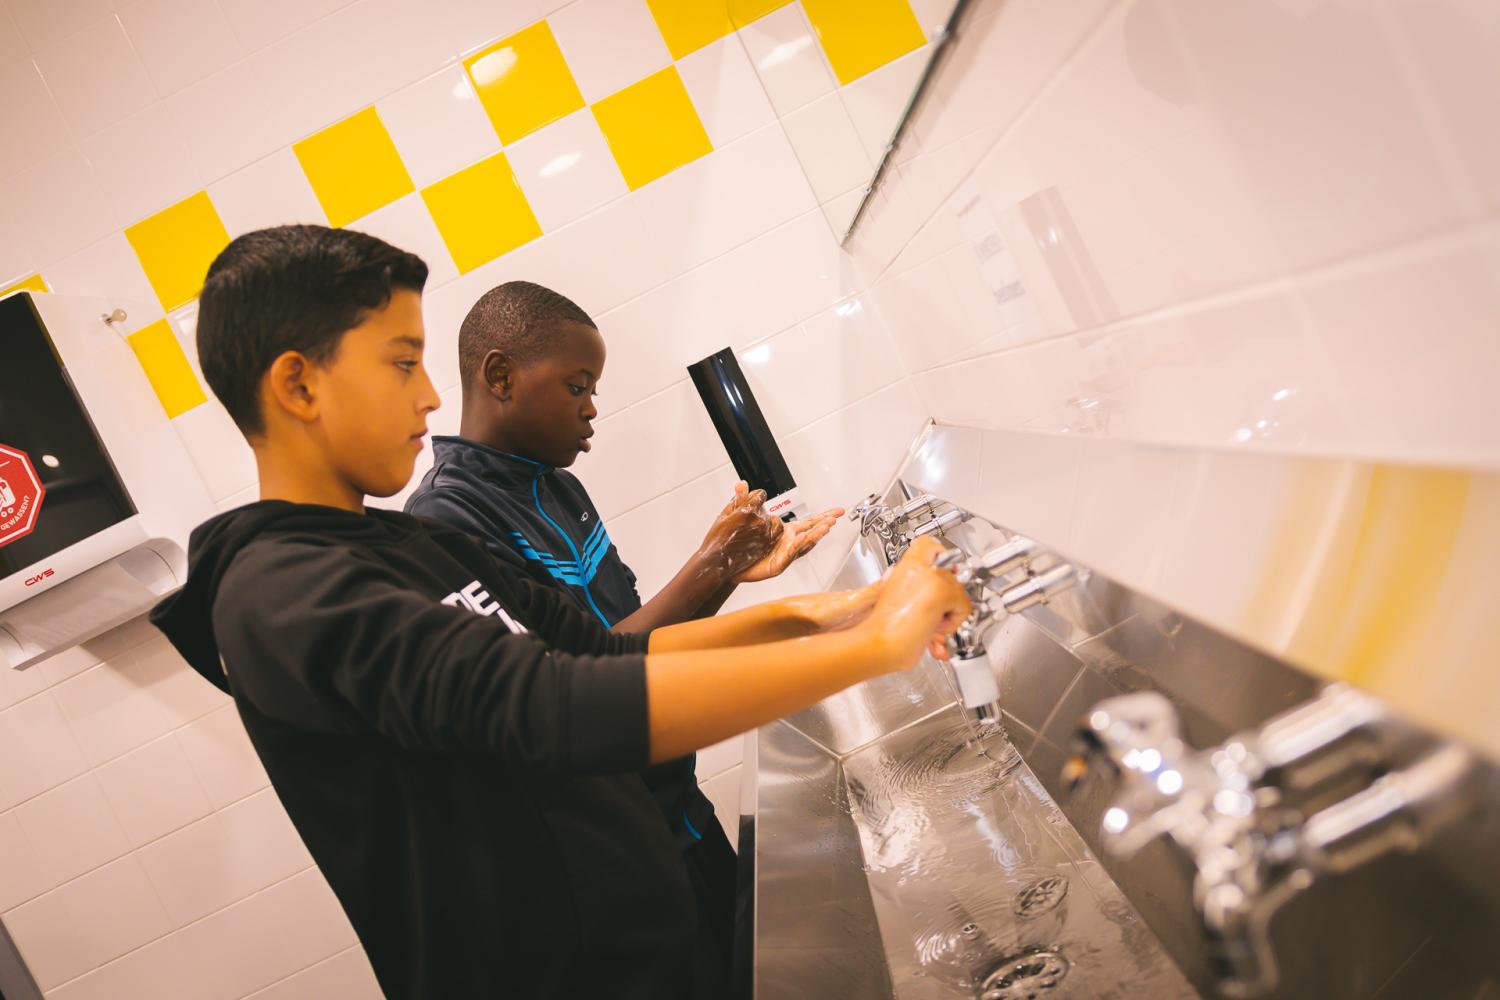 Seizoensgebonden scenario hygiëne, jongeren staan handen te wassen aan washbak